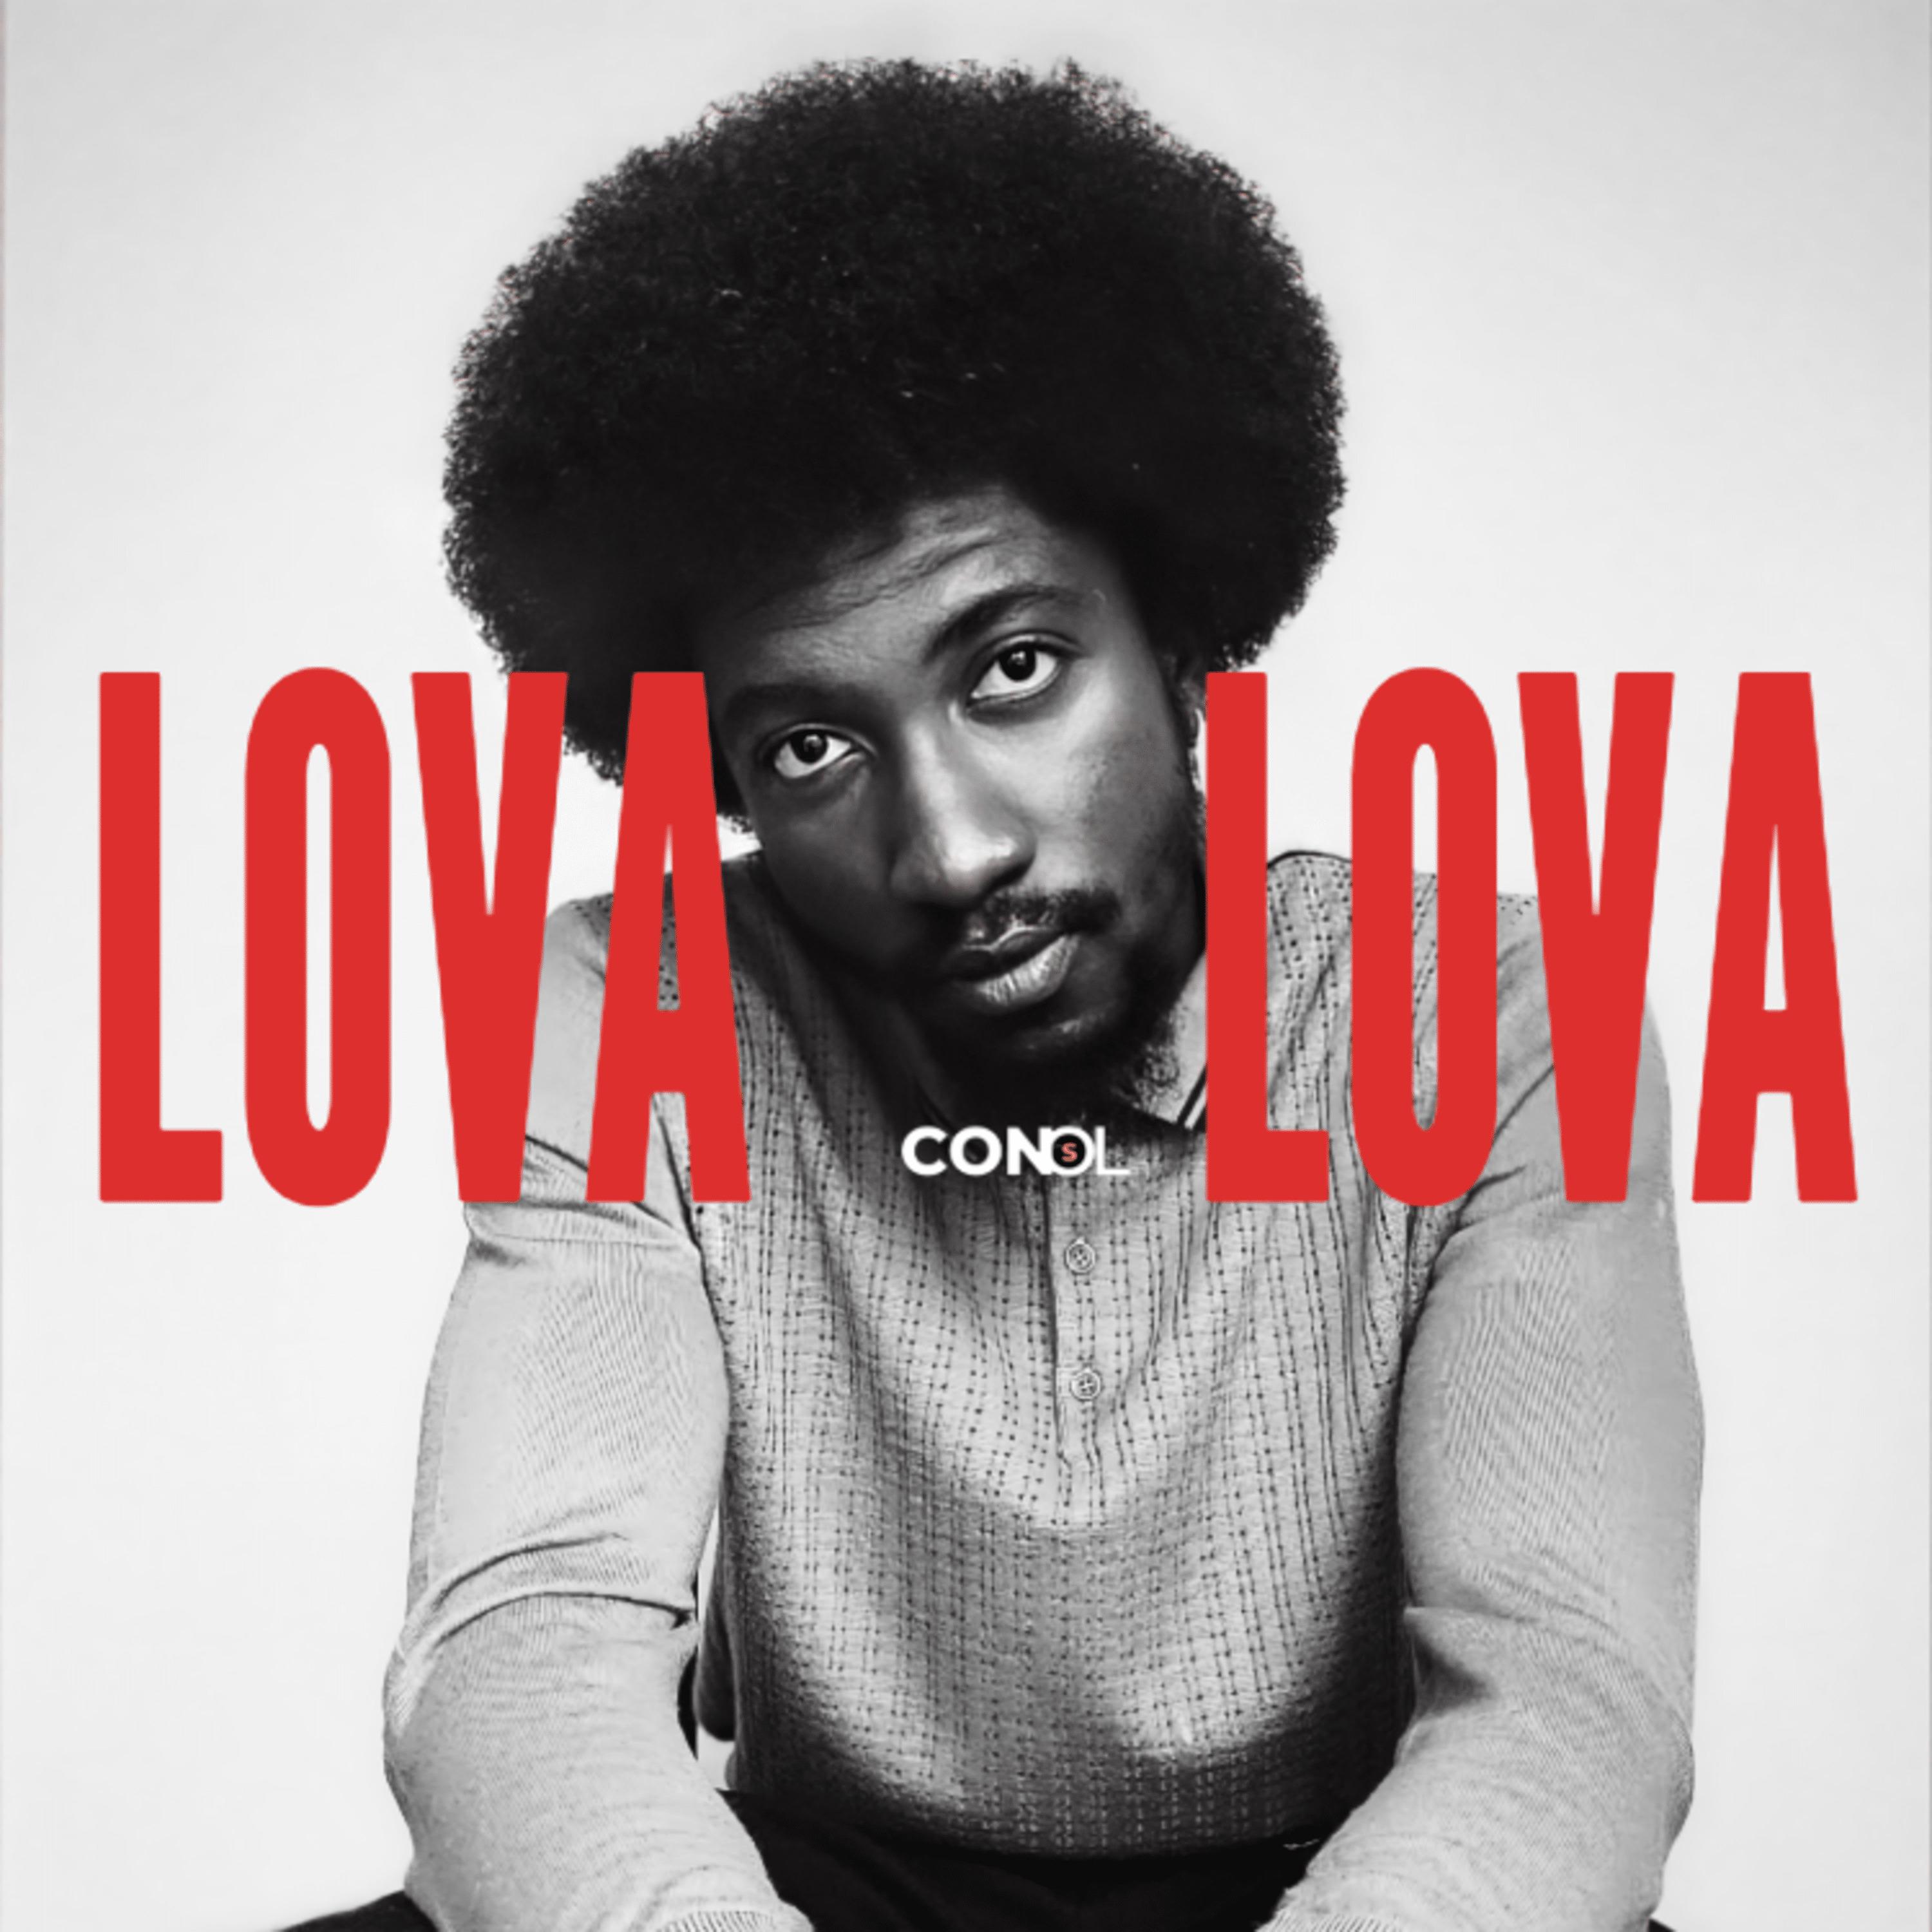 Постер альбома Lova Lova